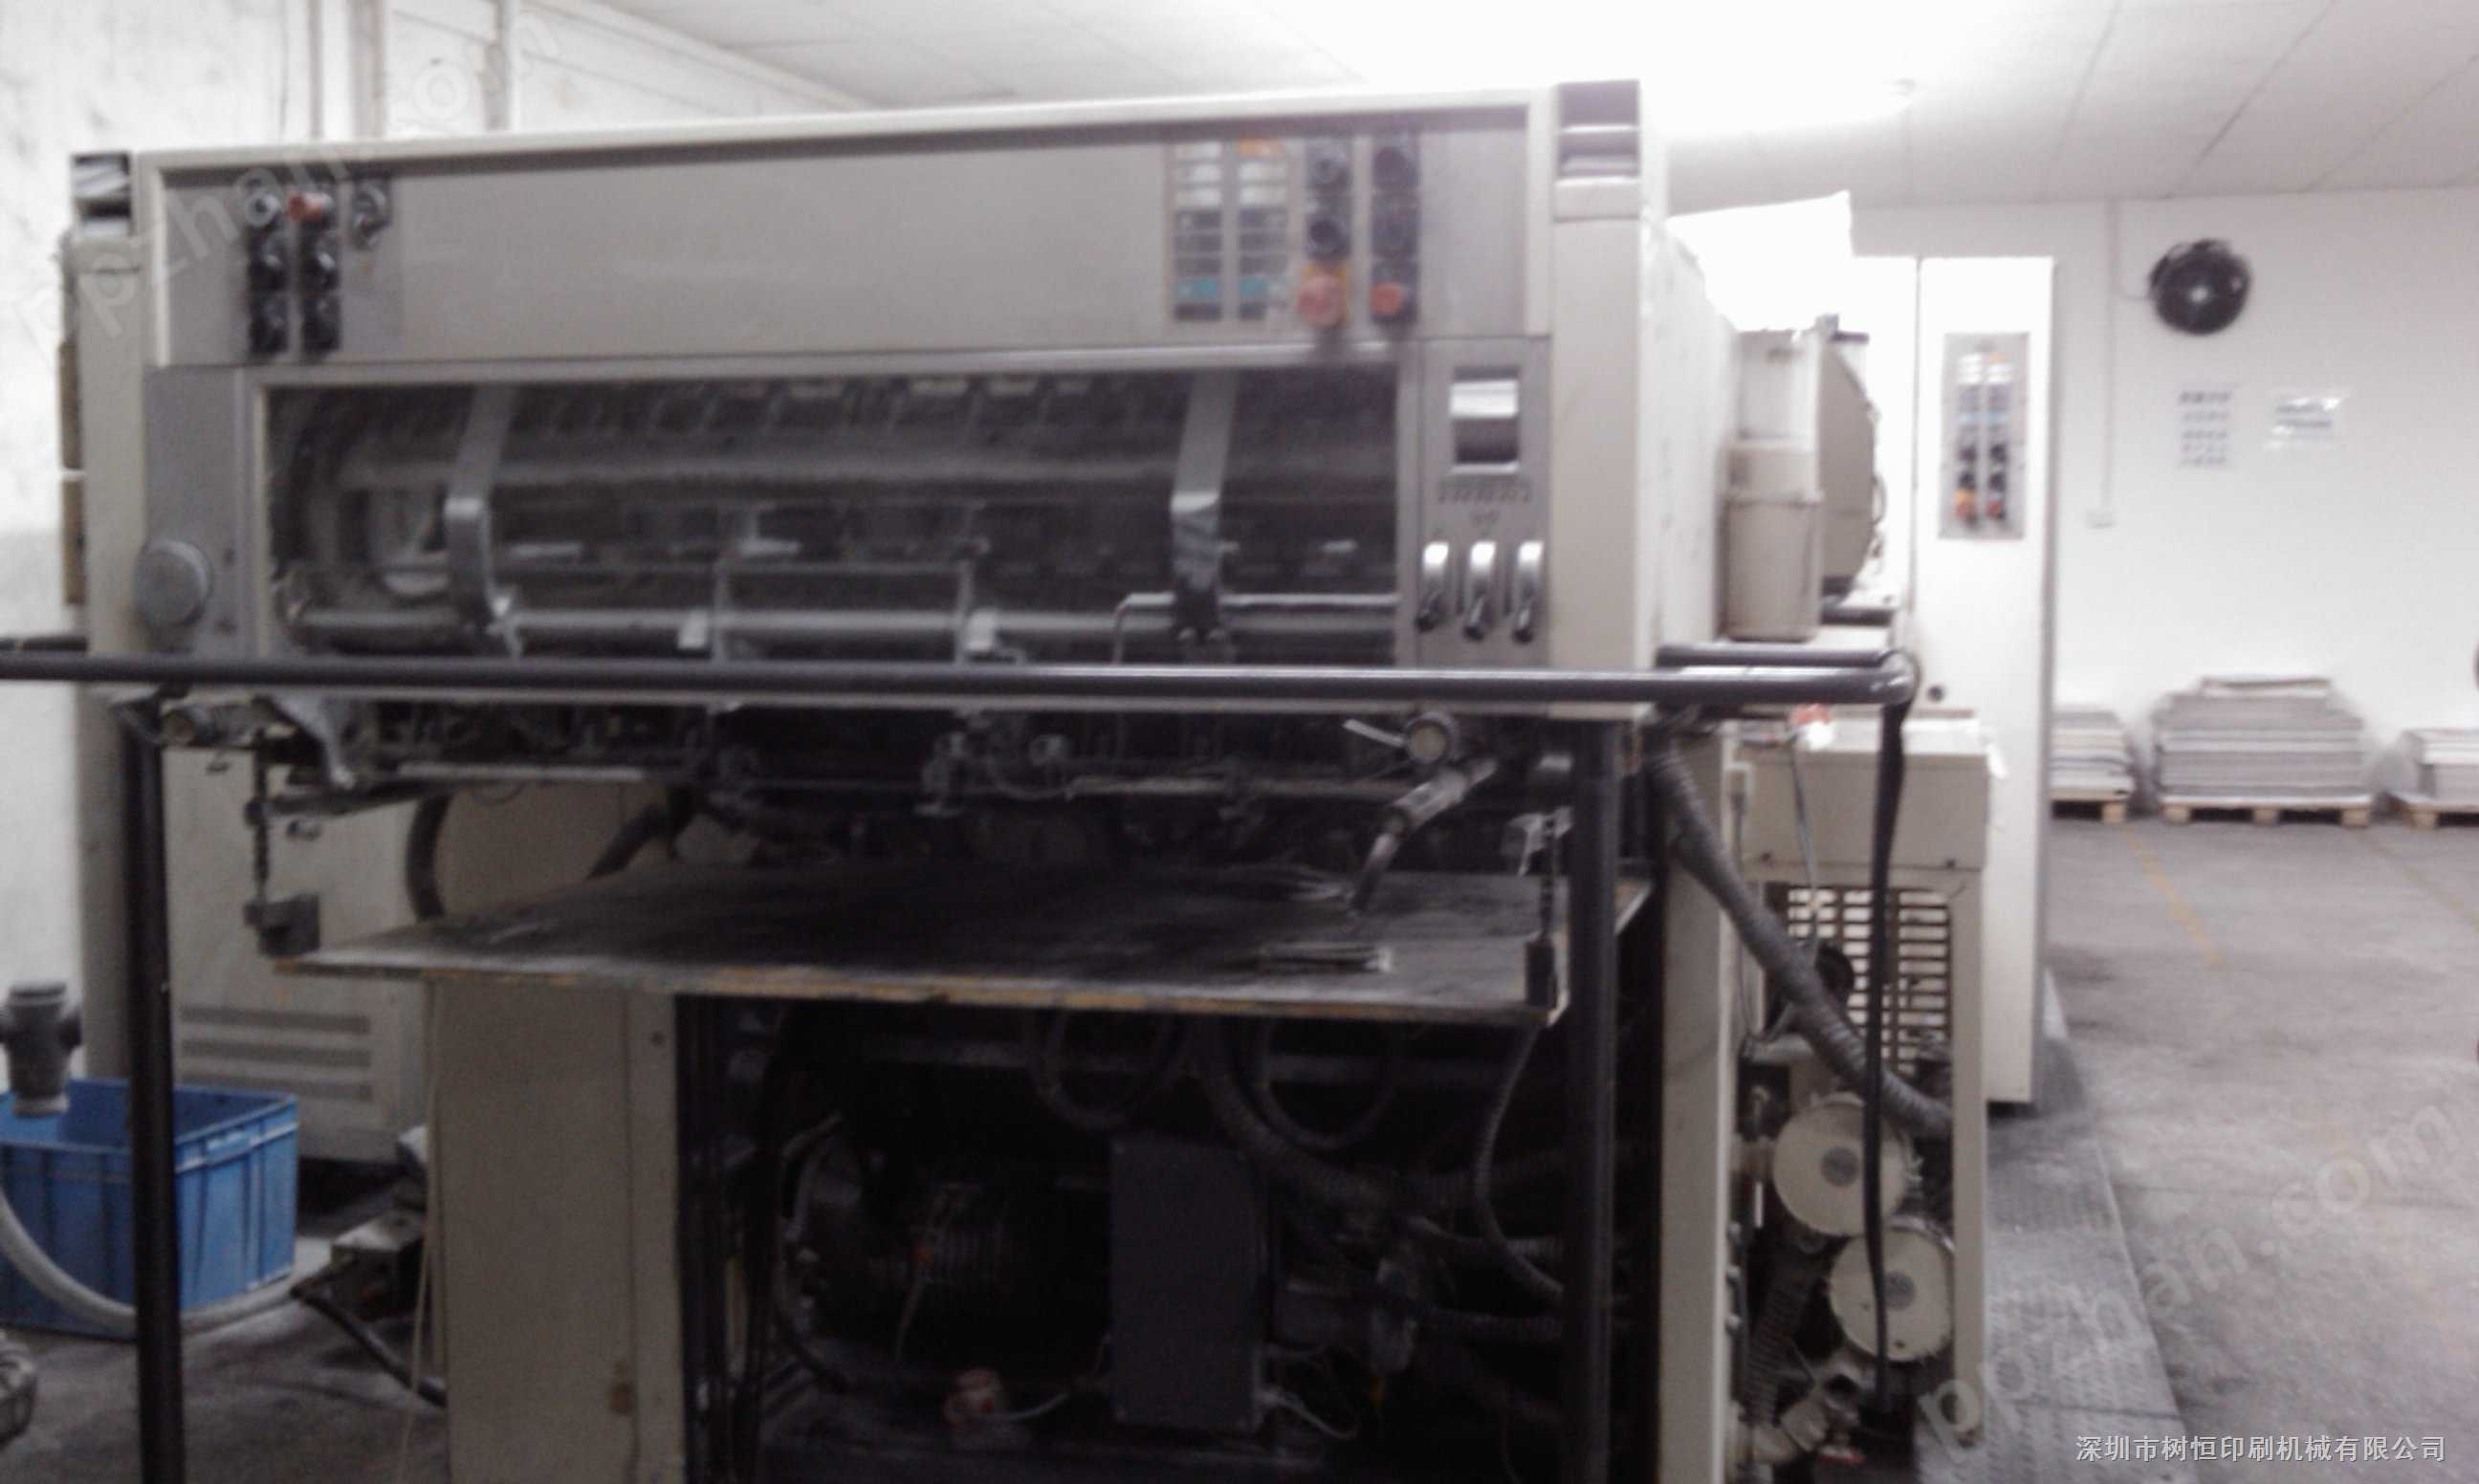 急让94年罗兰600对开四色胶印机